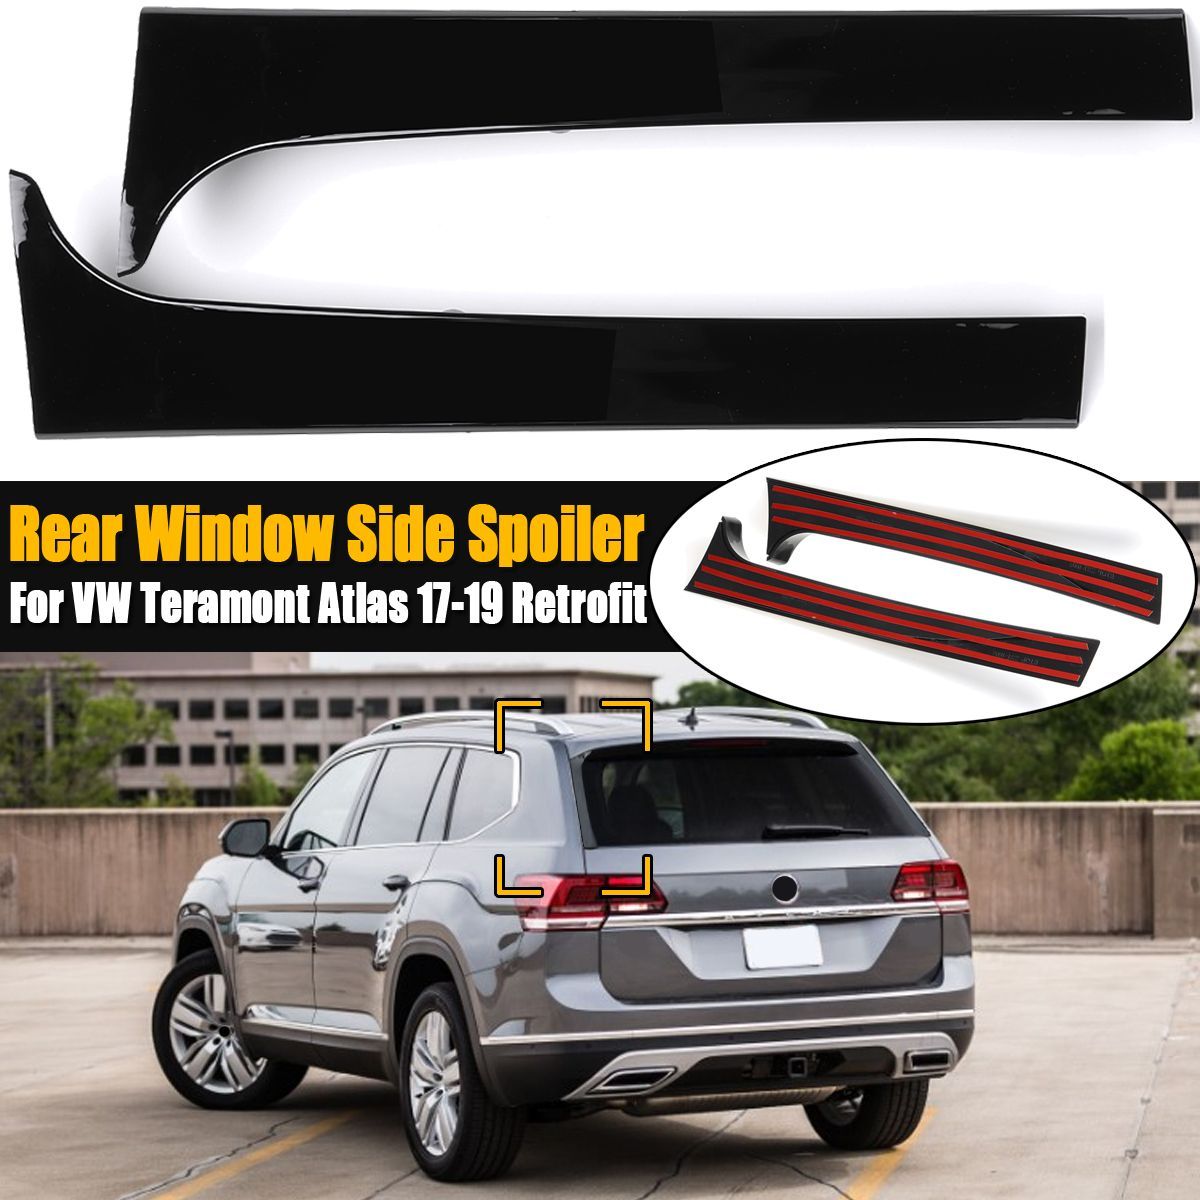 2Pcs-Car-Rear-Window-Side-Spoiler-Wing-Canards-Splitter-Glossy-Black-Fits-For-VW-Teramont-Atlas-2017-1656083